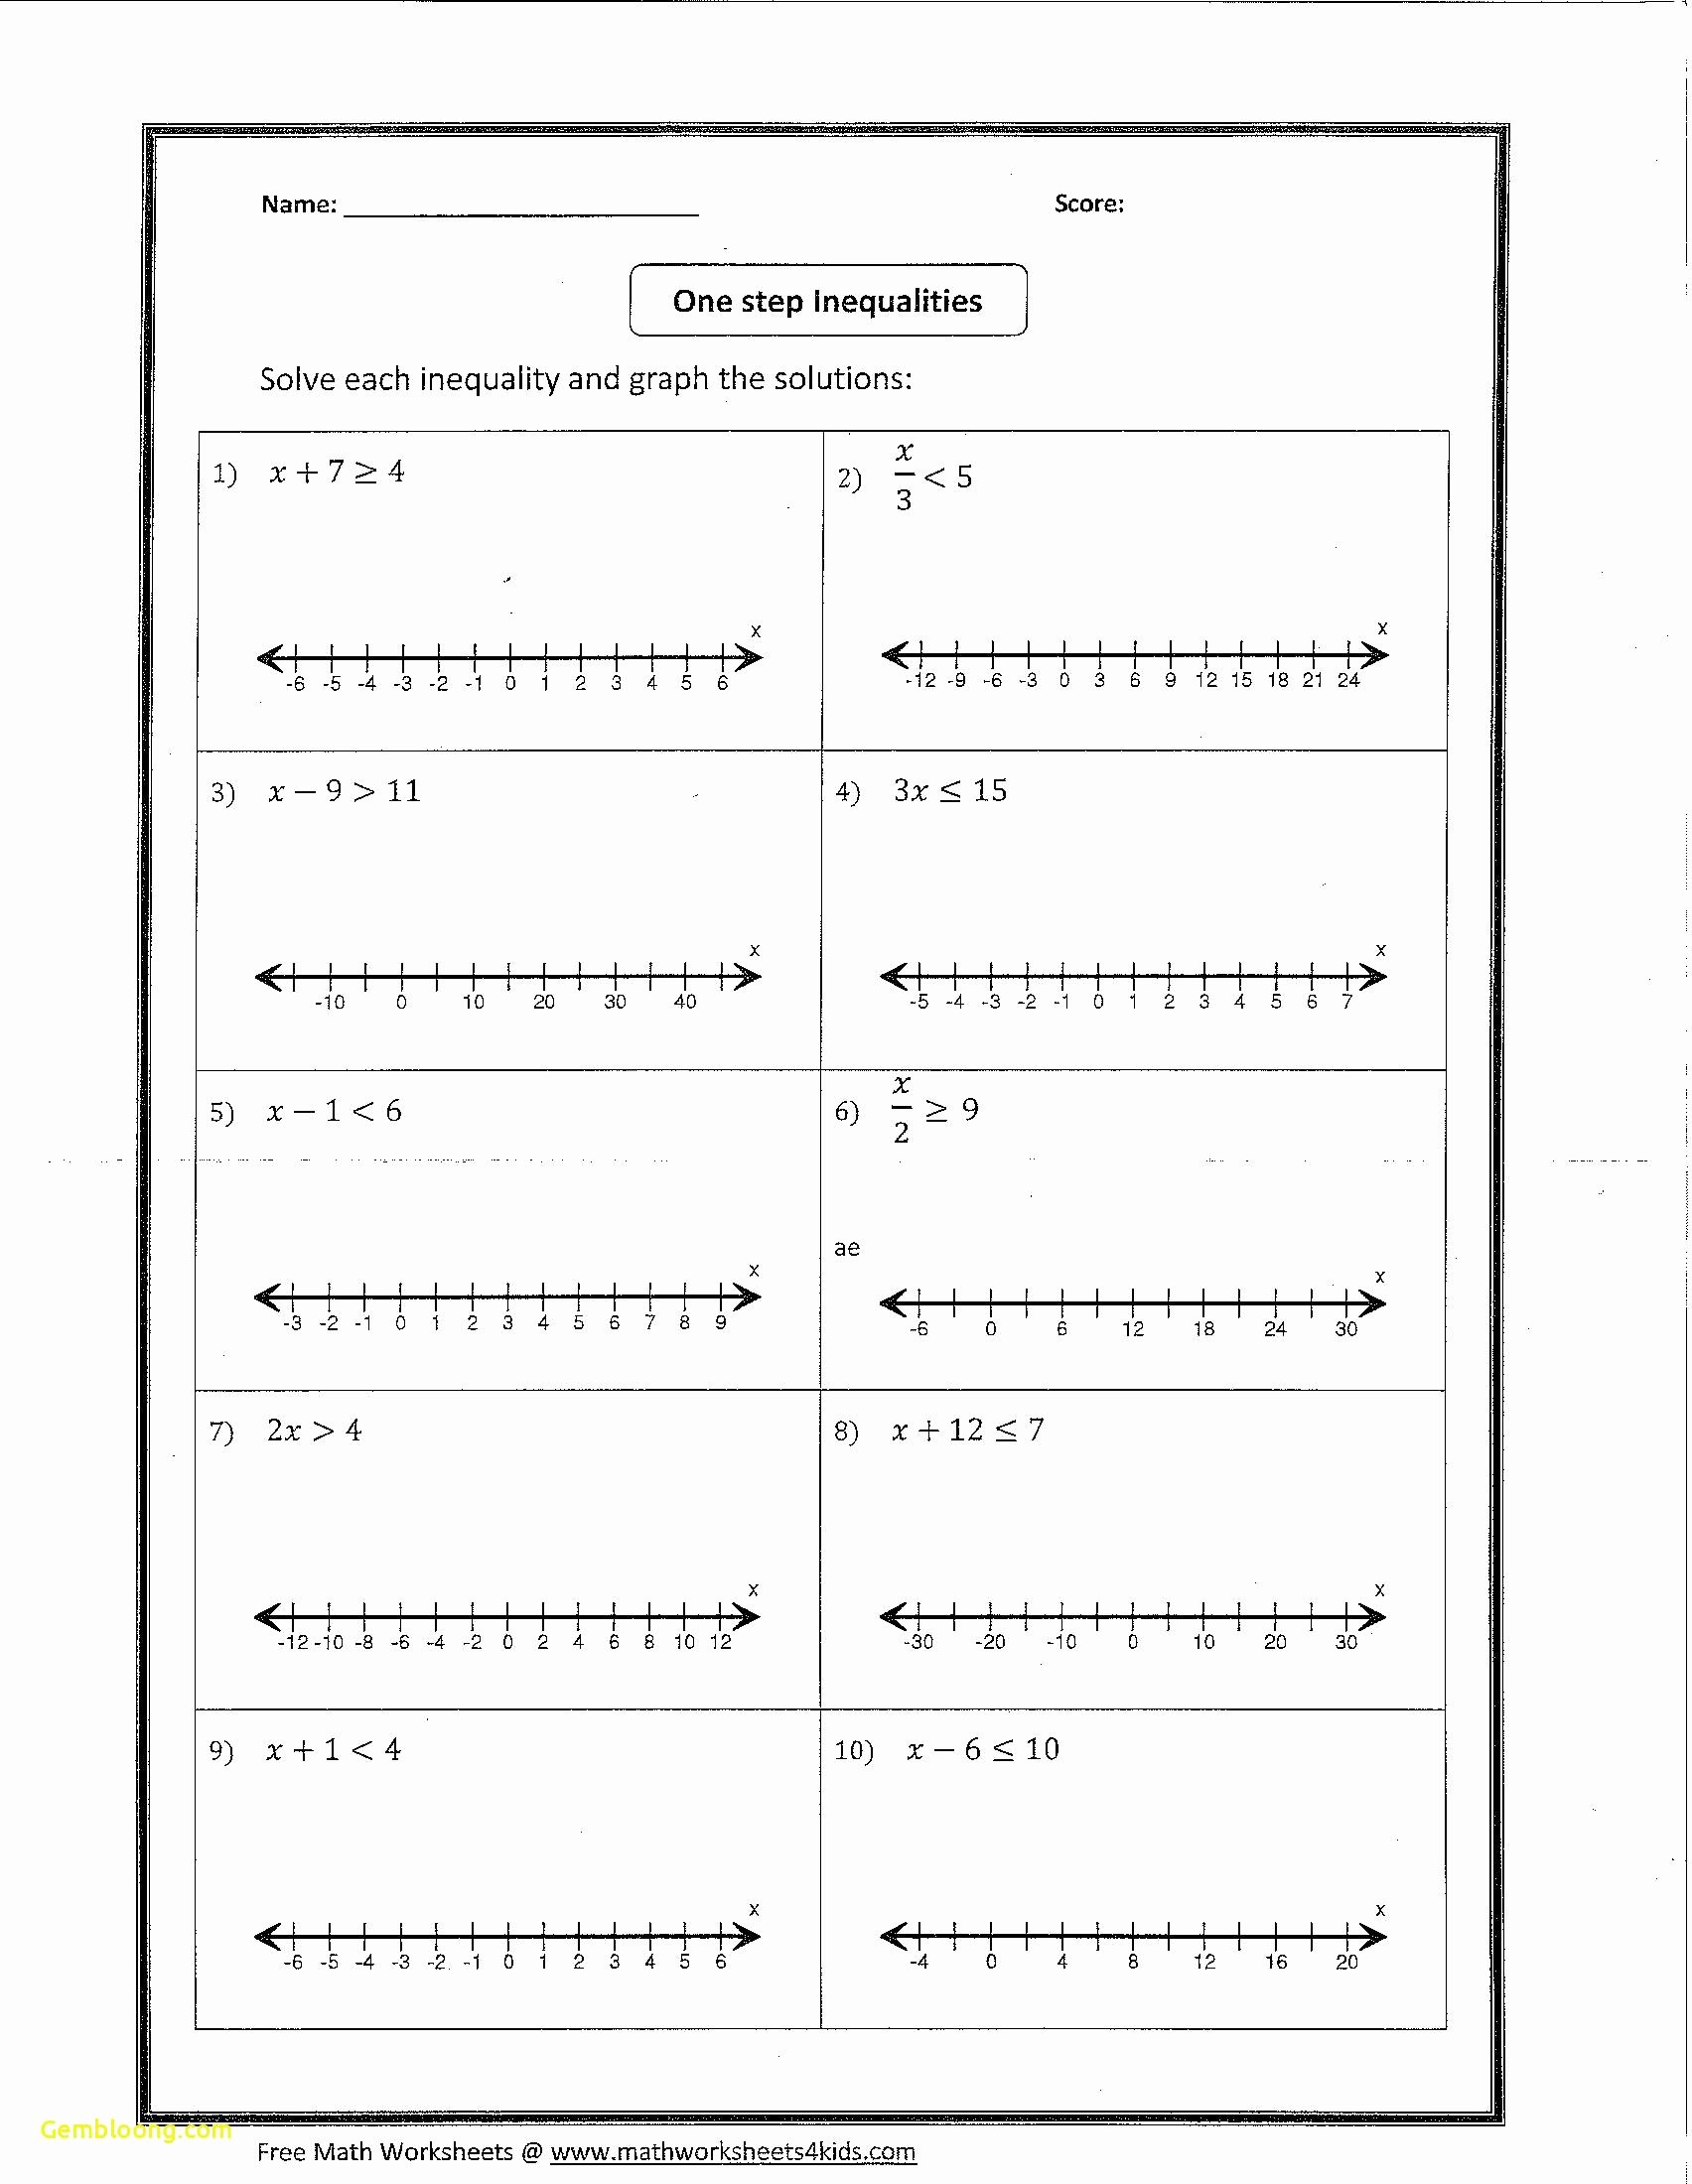 Solving Multi Step Inequalities Worksheet Awesome solving Multi Step Inequalities Worksheet Answers